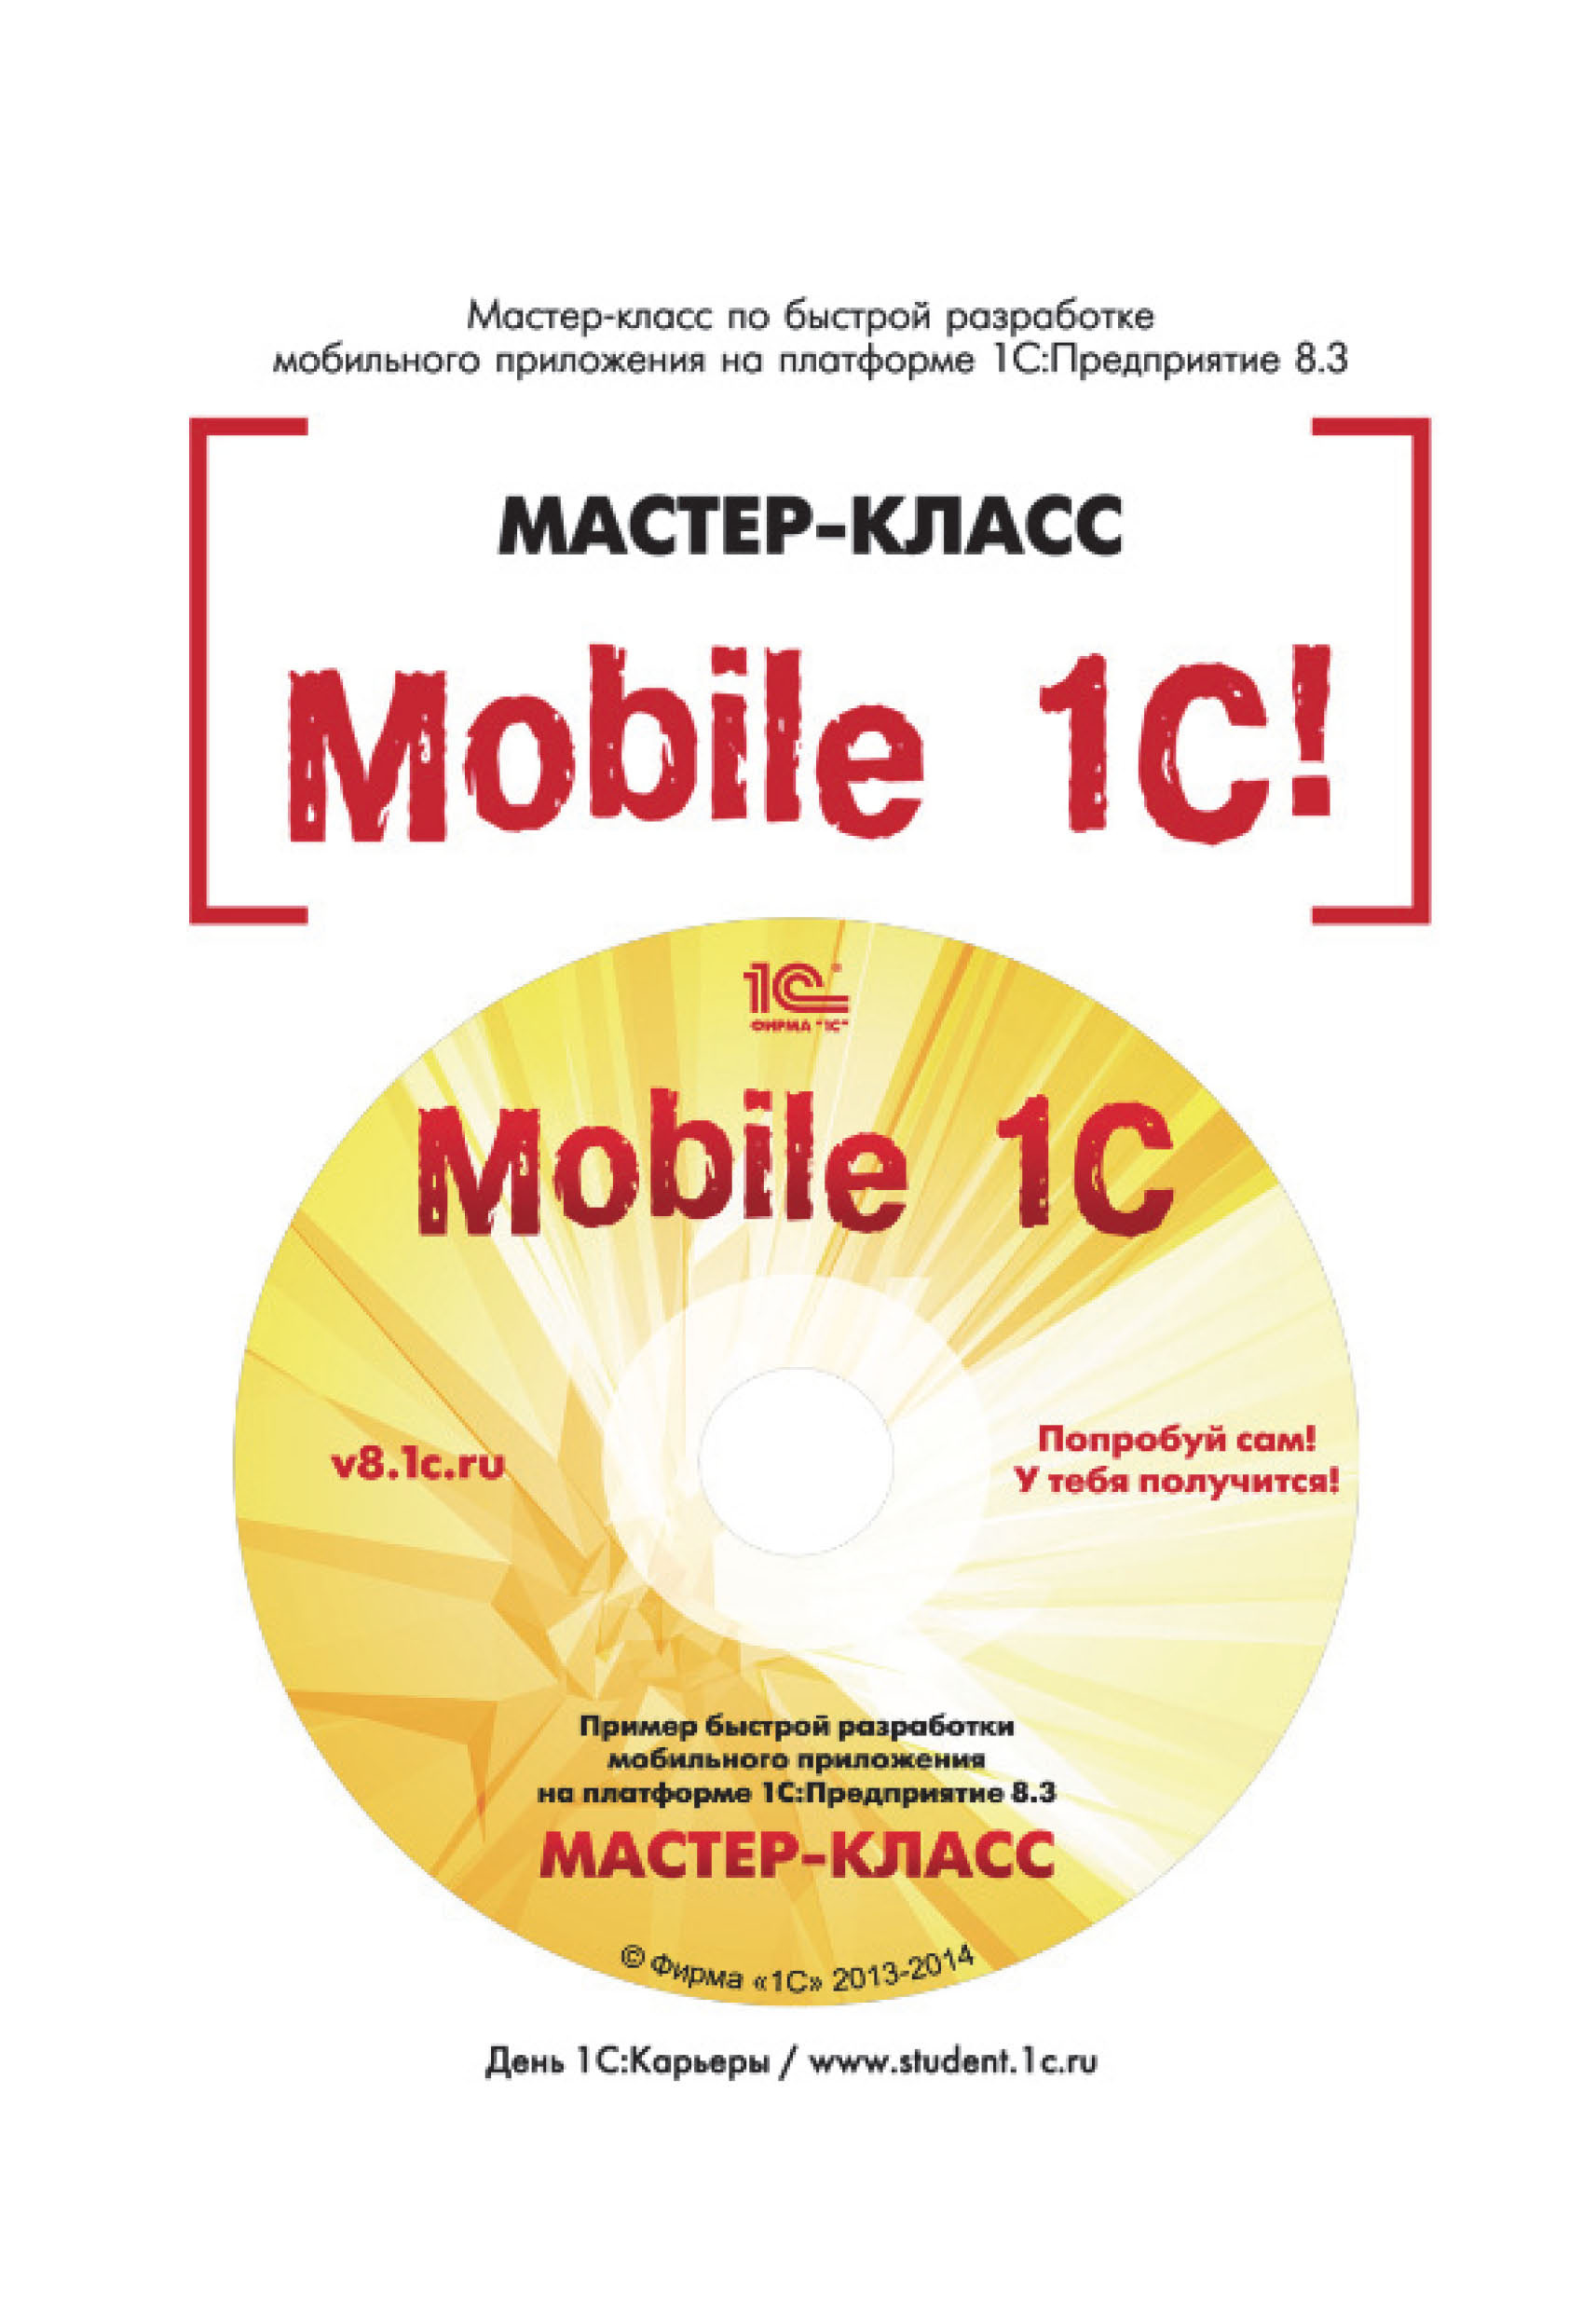 Книга  Mobile 1С. Пример быстрой разработки мобильного приложения на платформе 1С:Предприятие 8.3. Мастер-класс (+epub) созданная В. В. Рыбалка может относится к жанру программирование, программы, самоучители. Стоимость электронной книги Mobile 1С. Пример быстрой разработки мобильного приложения на платформе 1С:Предприятие 8.3. Мастер-класс (+epub) с идентификатором 40497871 составляет 100.00 руб.